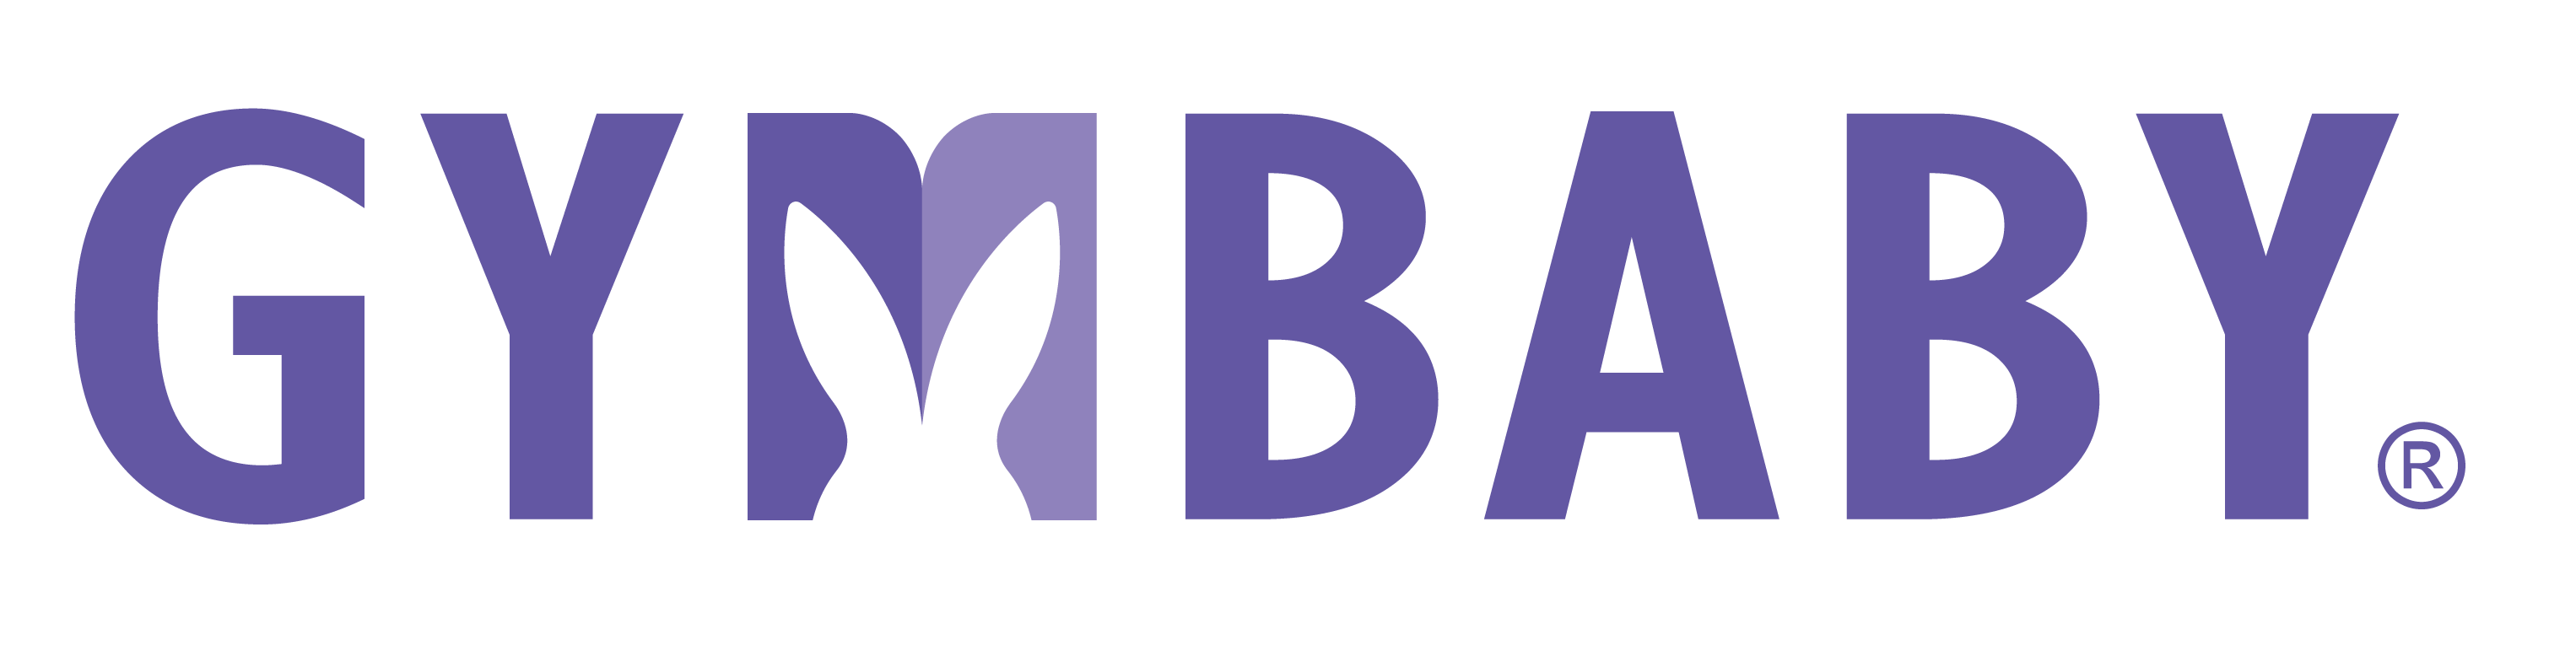 紫色logo.png